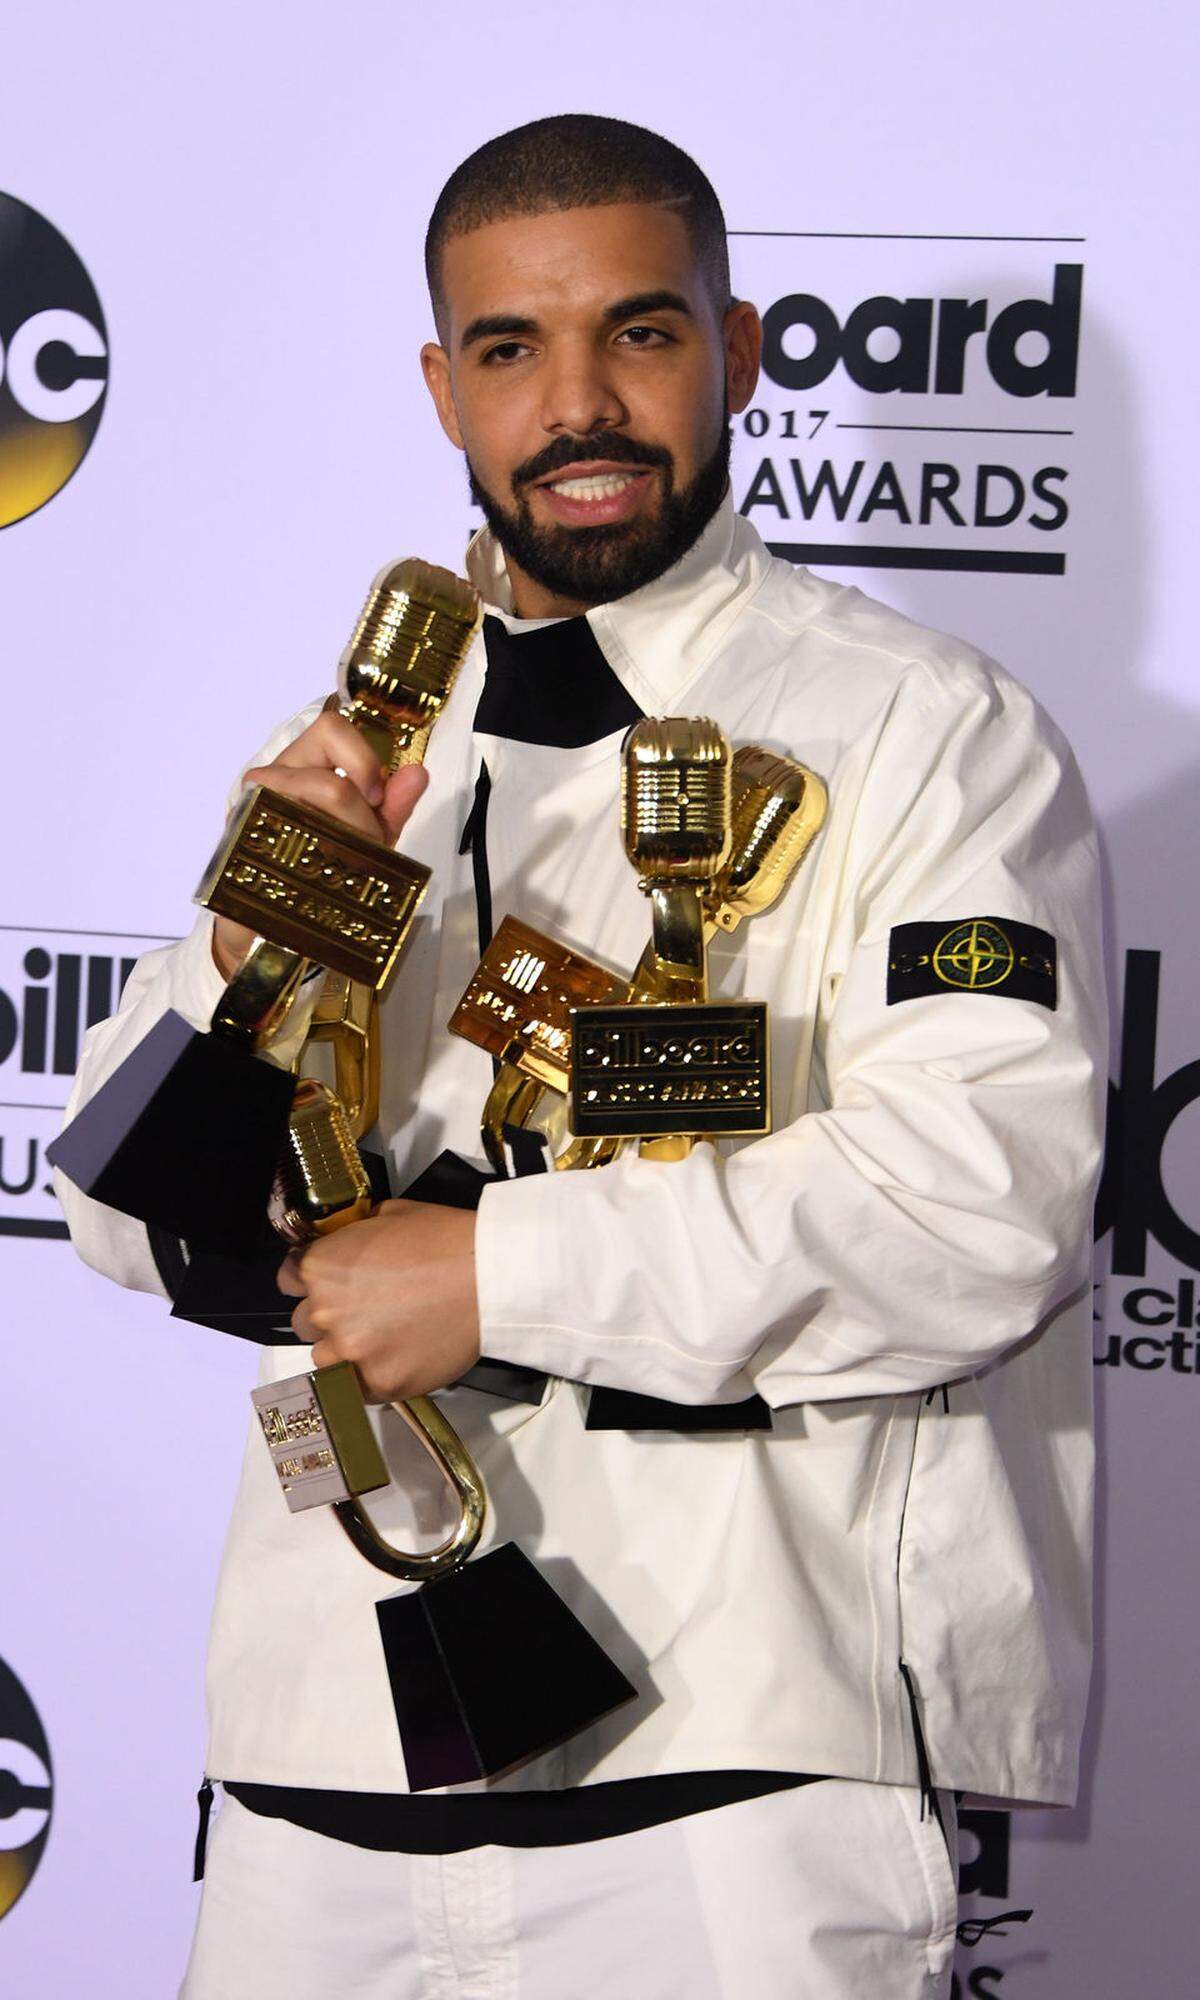 Das US-Magazin veröffentlicht fortlaufend Listen der bestbezahlten Prominenten. Dazu zählen etwa auch Einnahmen aus Werbung und Merchandising. Die Liste basiert auf Recherchen der Redakteure und Schätzungen und gilt als zuverlässig. Auf Platz 4 landete heuer der Musiker Drake mit 94 Millionen Dollar.